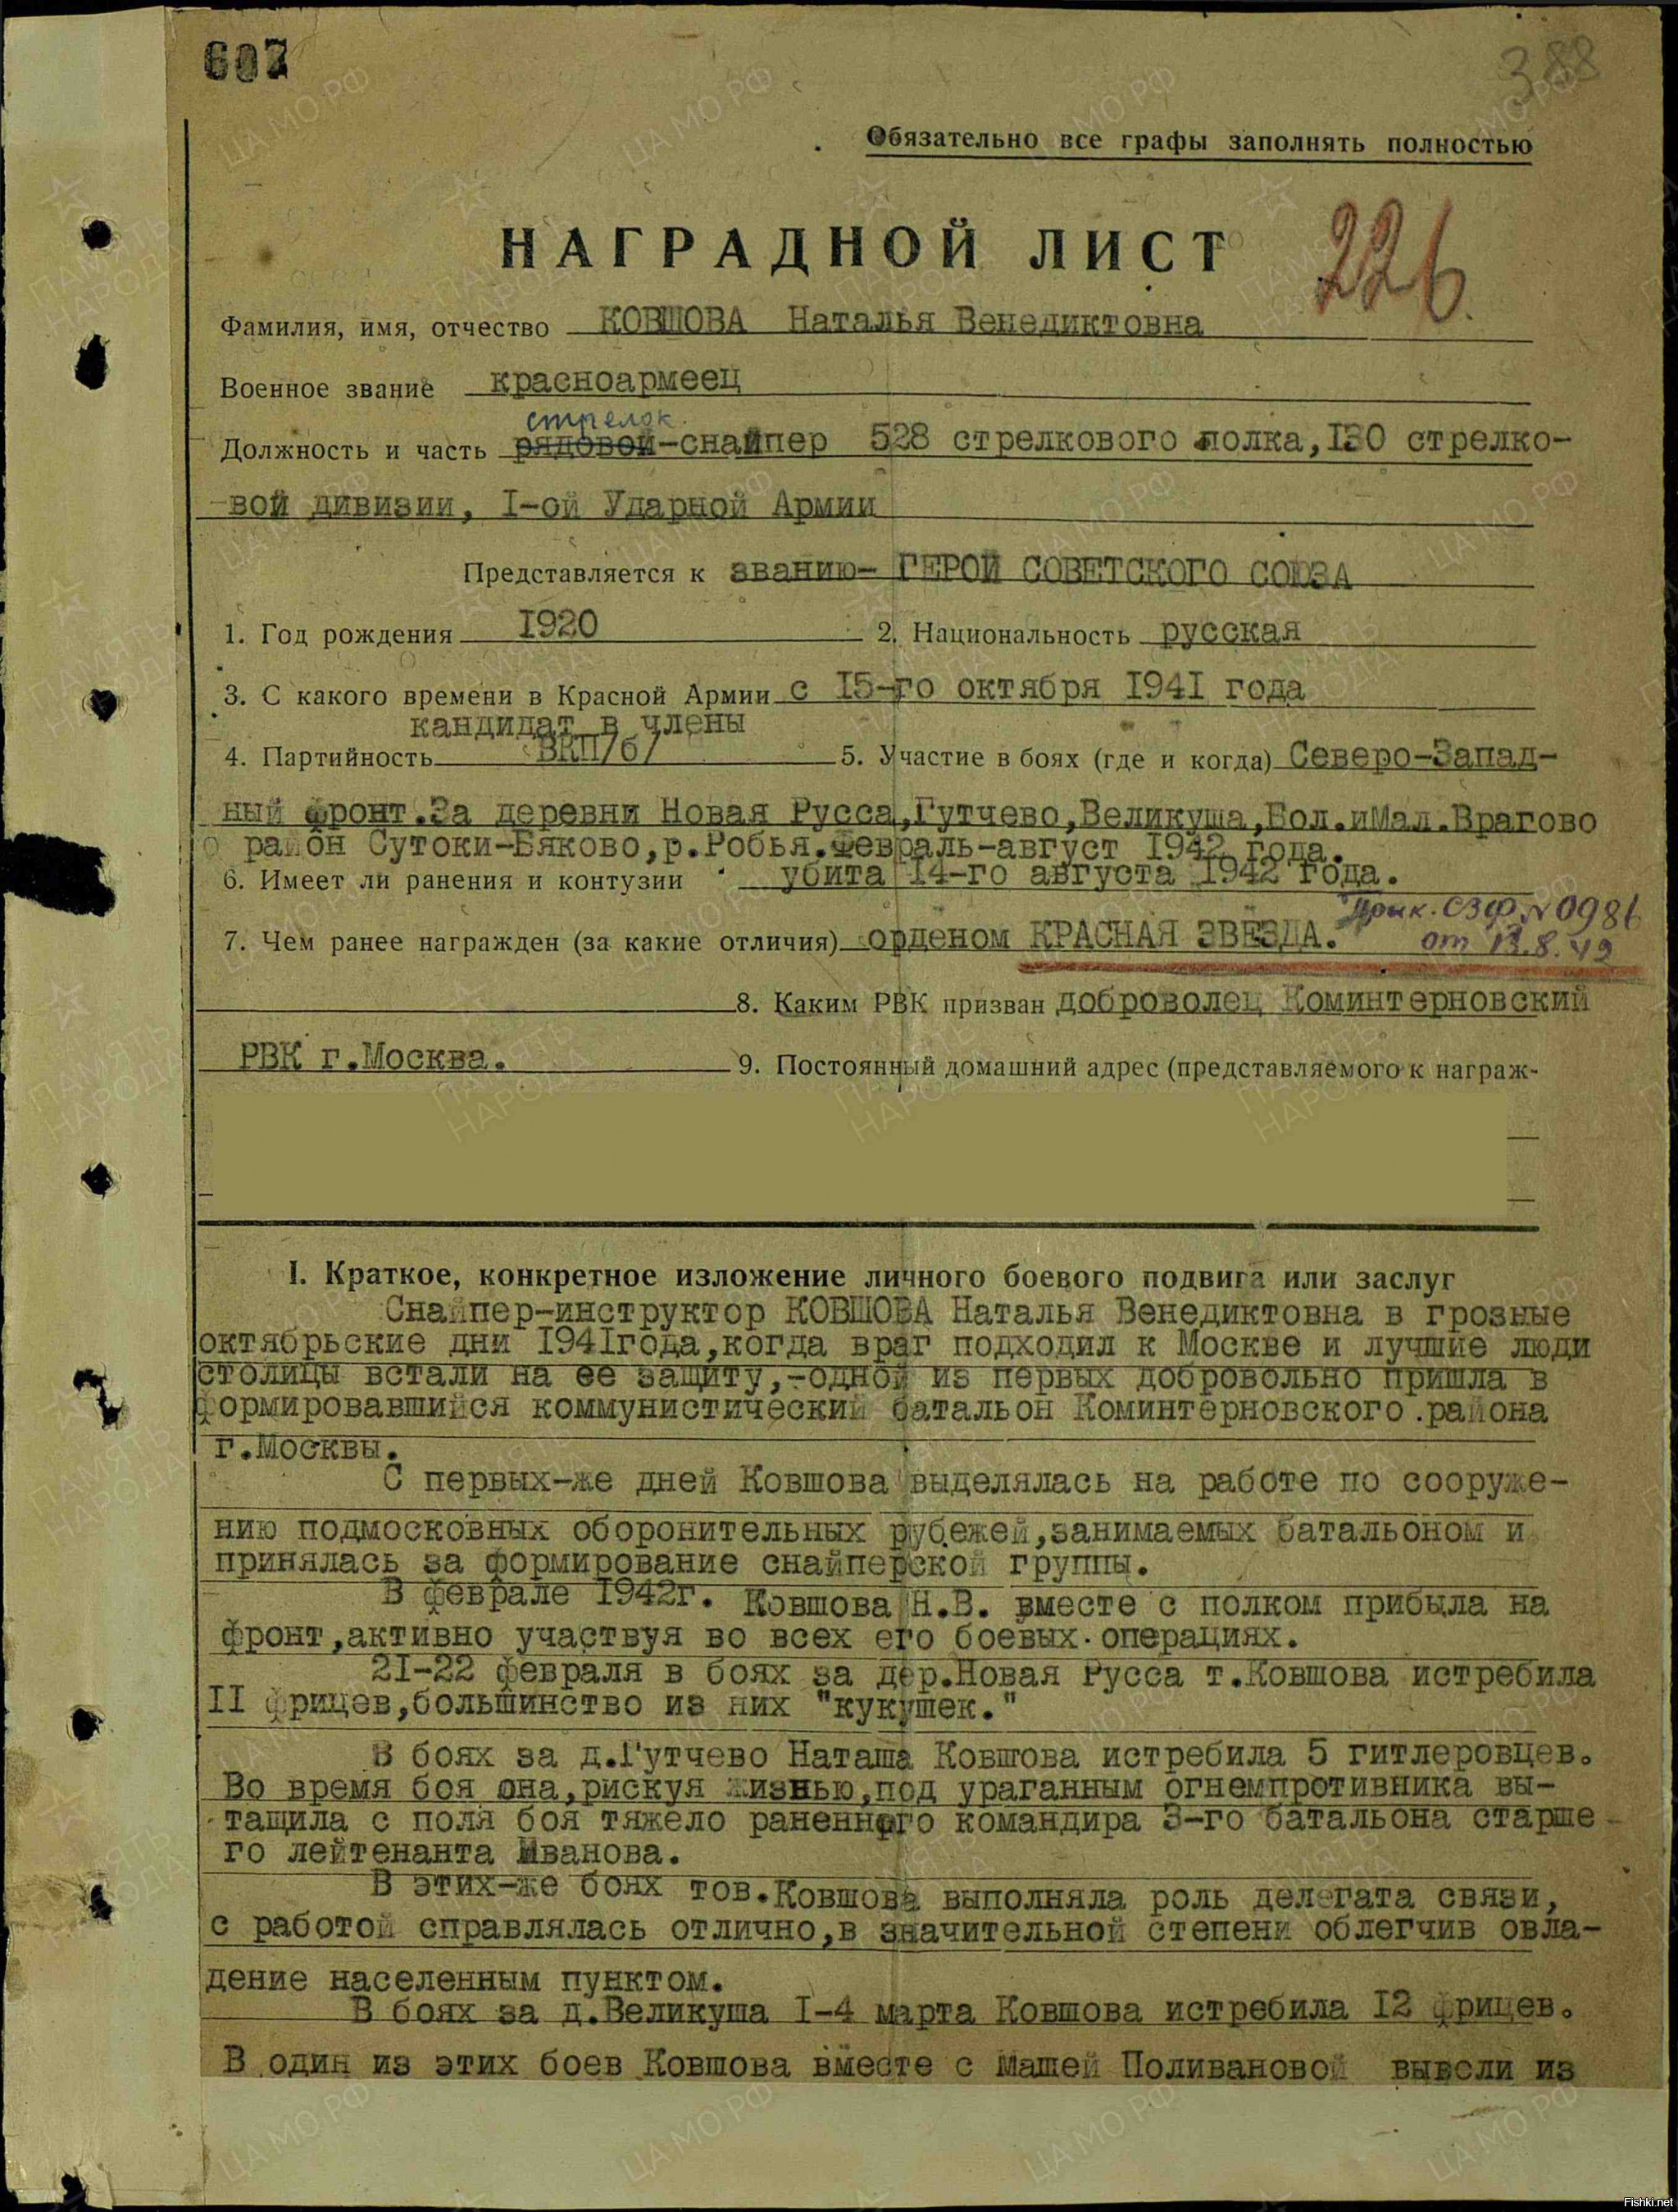 Наградной лист героя советского Союза Марии Поливановой